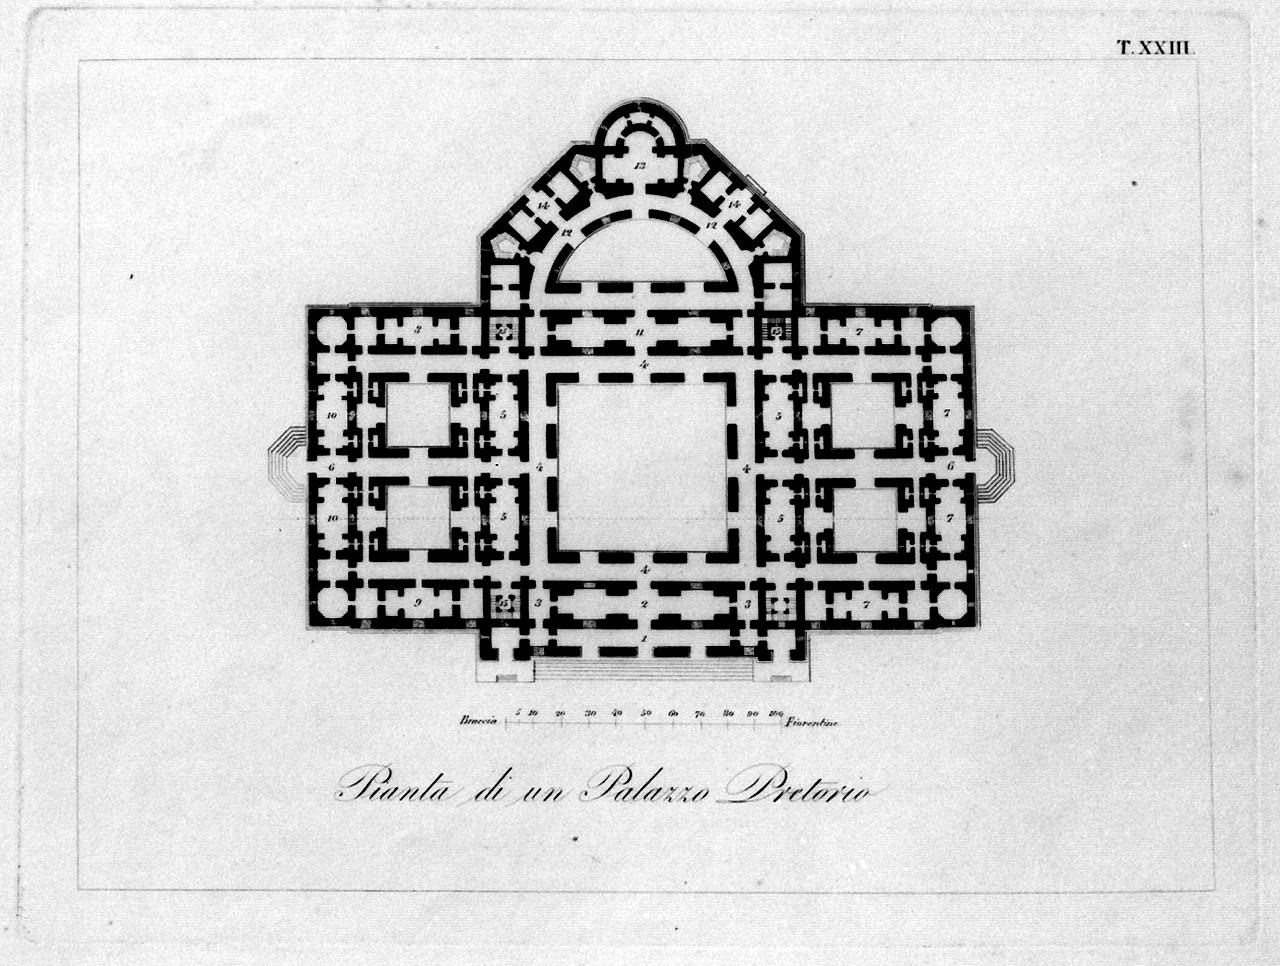 progetti architettonici (stampa, serie) di Nuti Fabio, Chirici Carlo (sec. XIX)